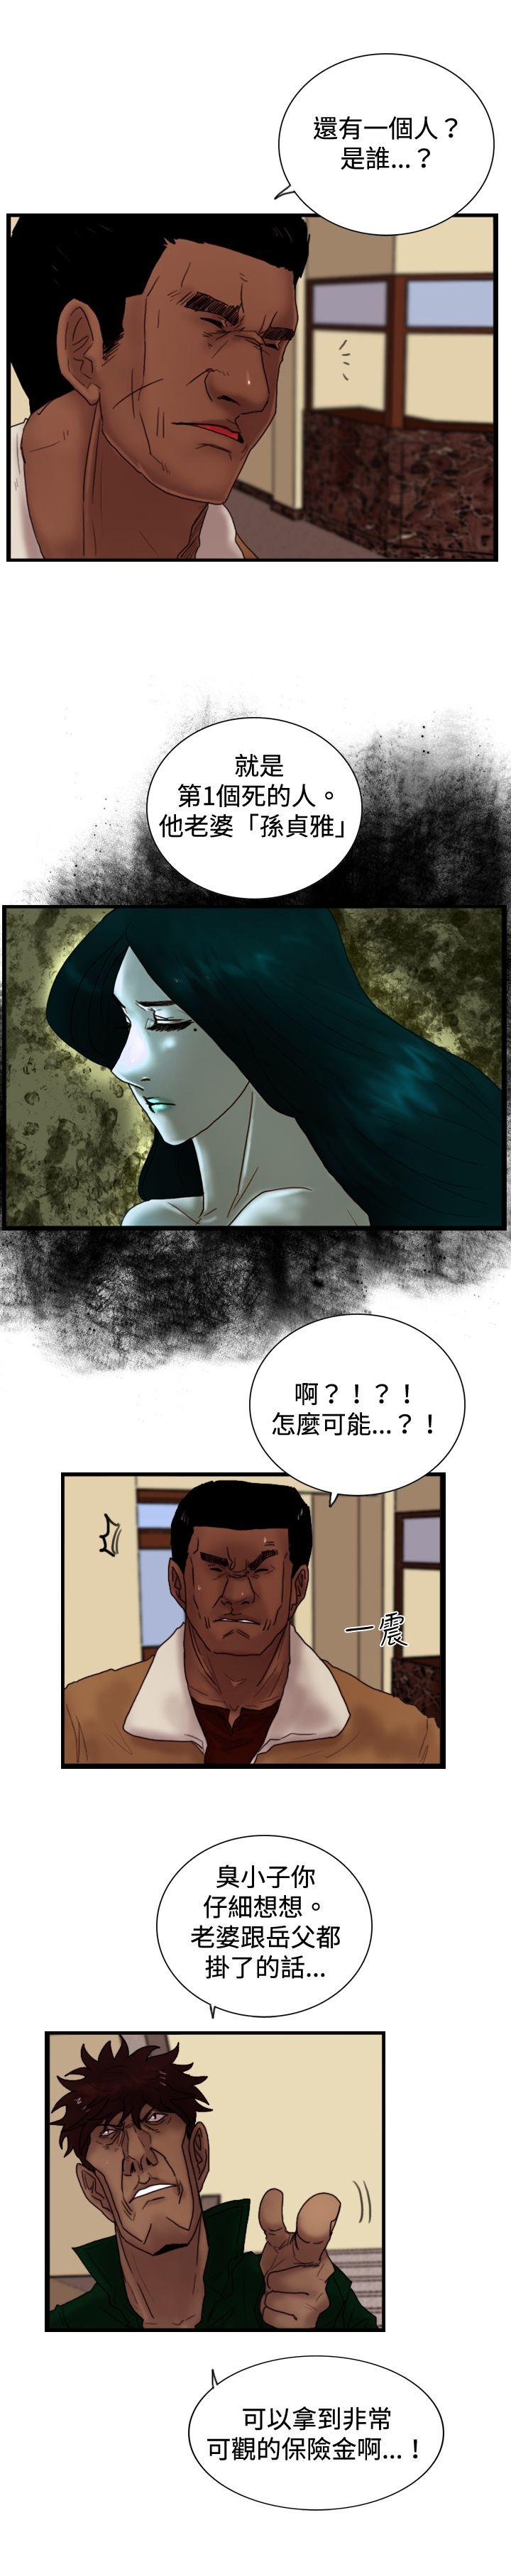 韩国污漫画 覺醒(完結) 第23话鬼 12